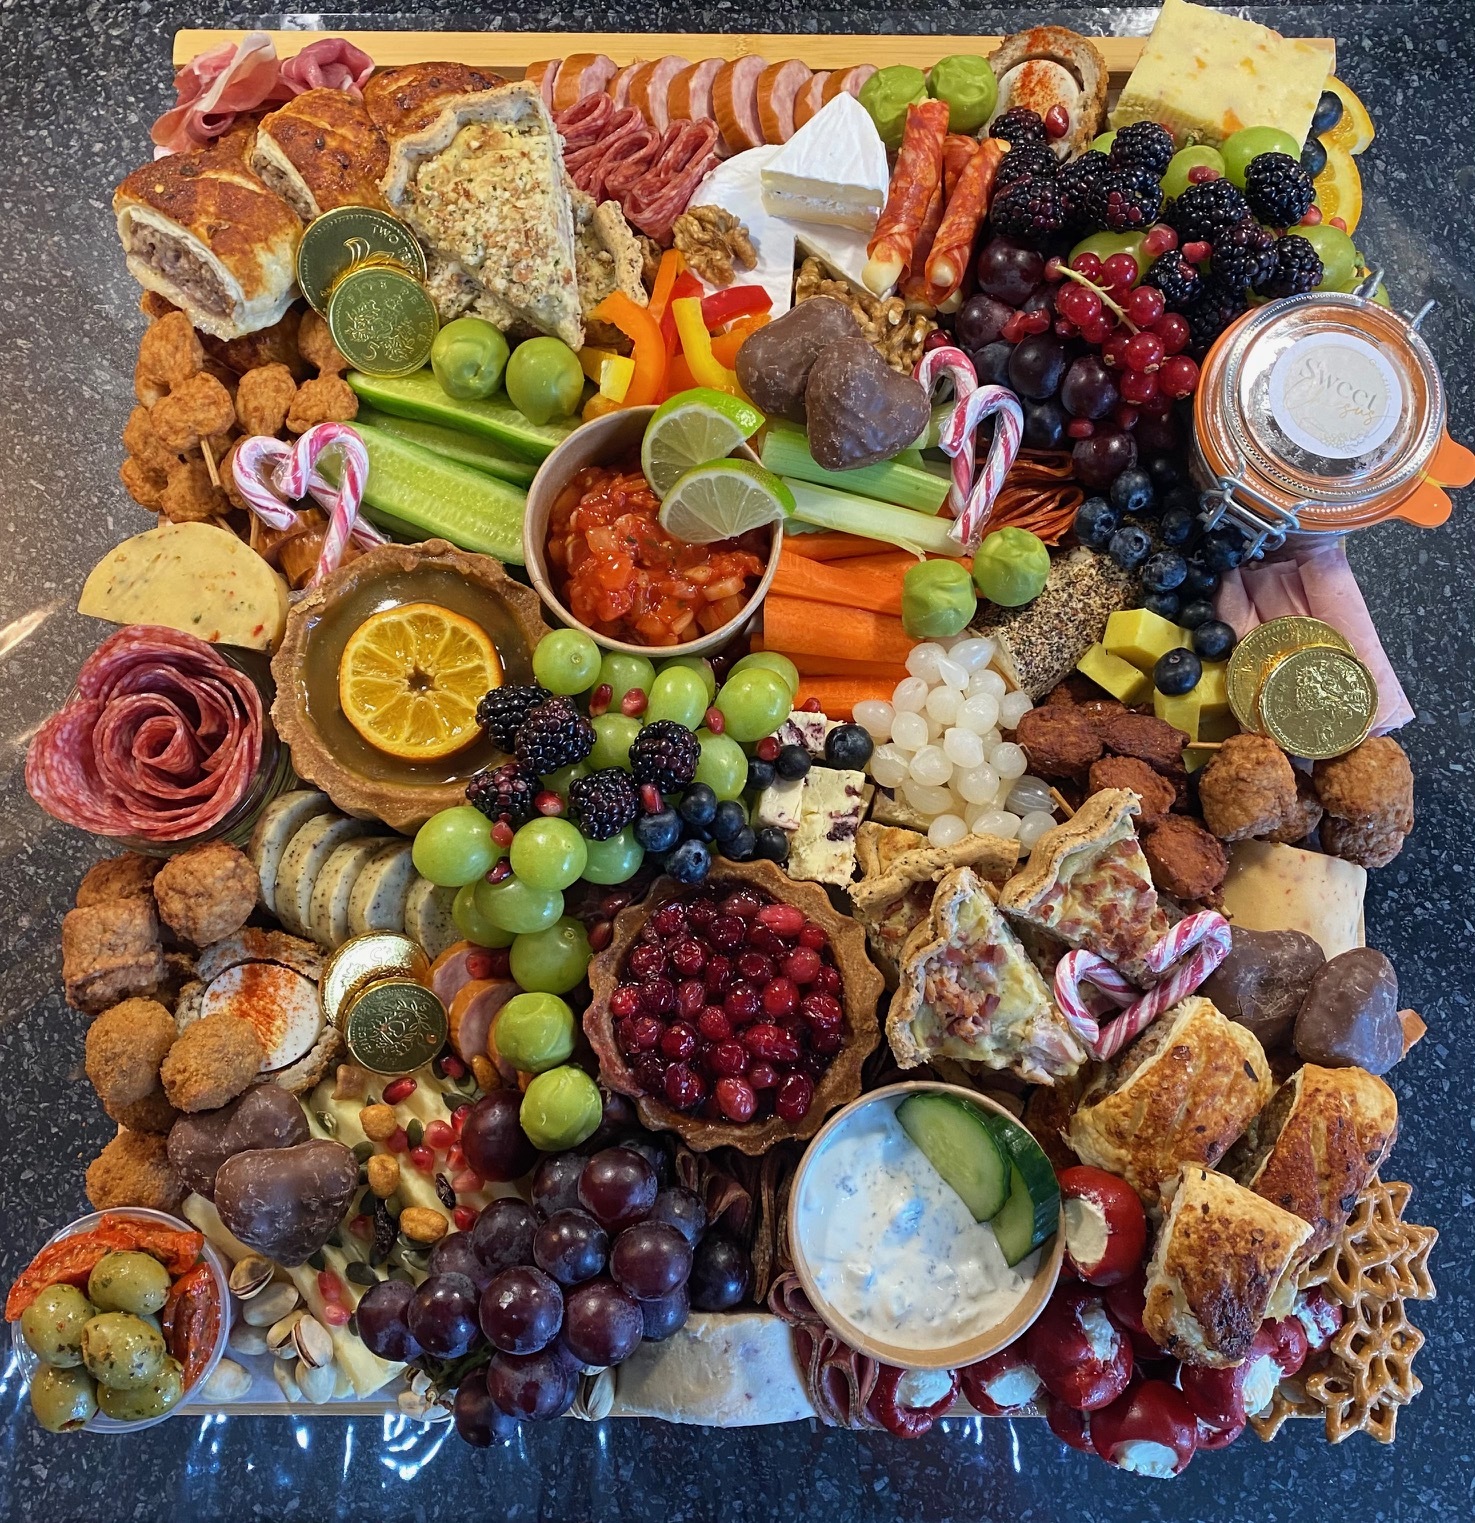 A sweetcheesus grazing platter